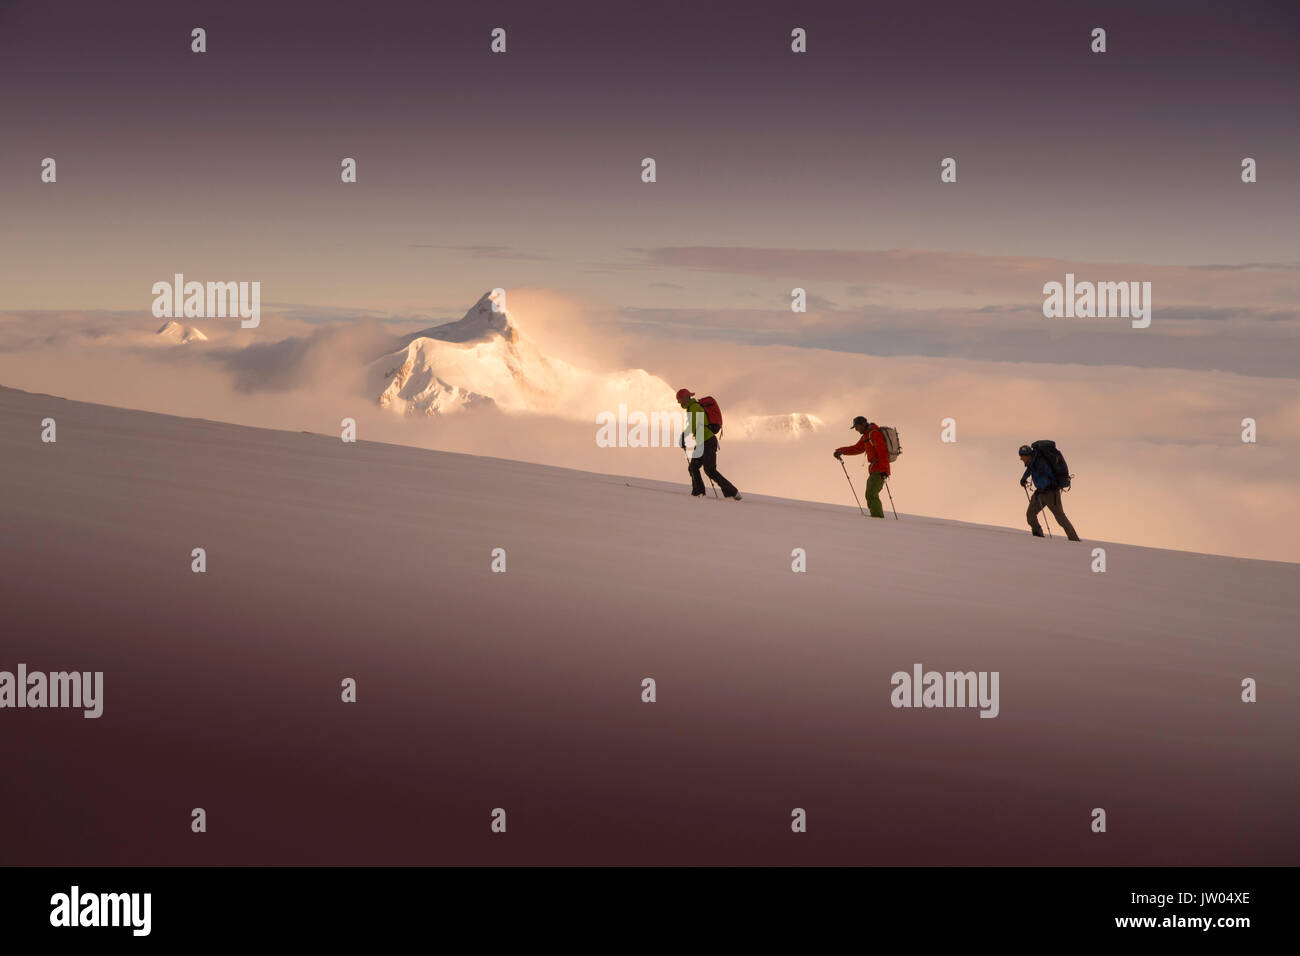 Trois alpinistes ski Denali croissant, avec le coucher du soleil sur le mont Hunter dans l'arrière-plan. Denali National Park est un endroit idéal pour le ski de randonnée et l'escalade tours. Banque D'Images